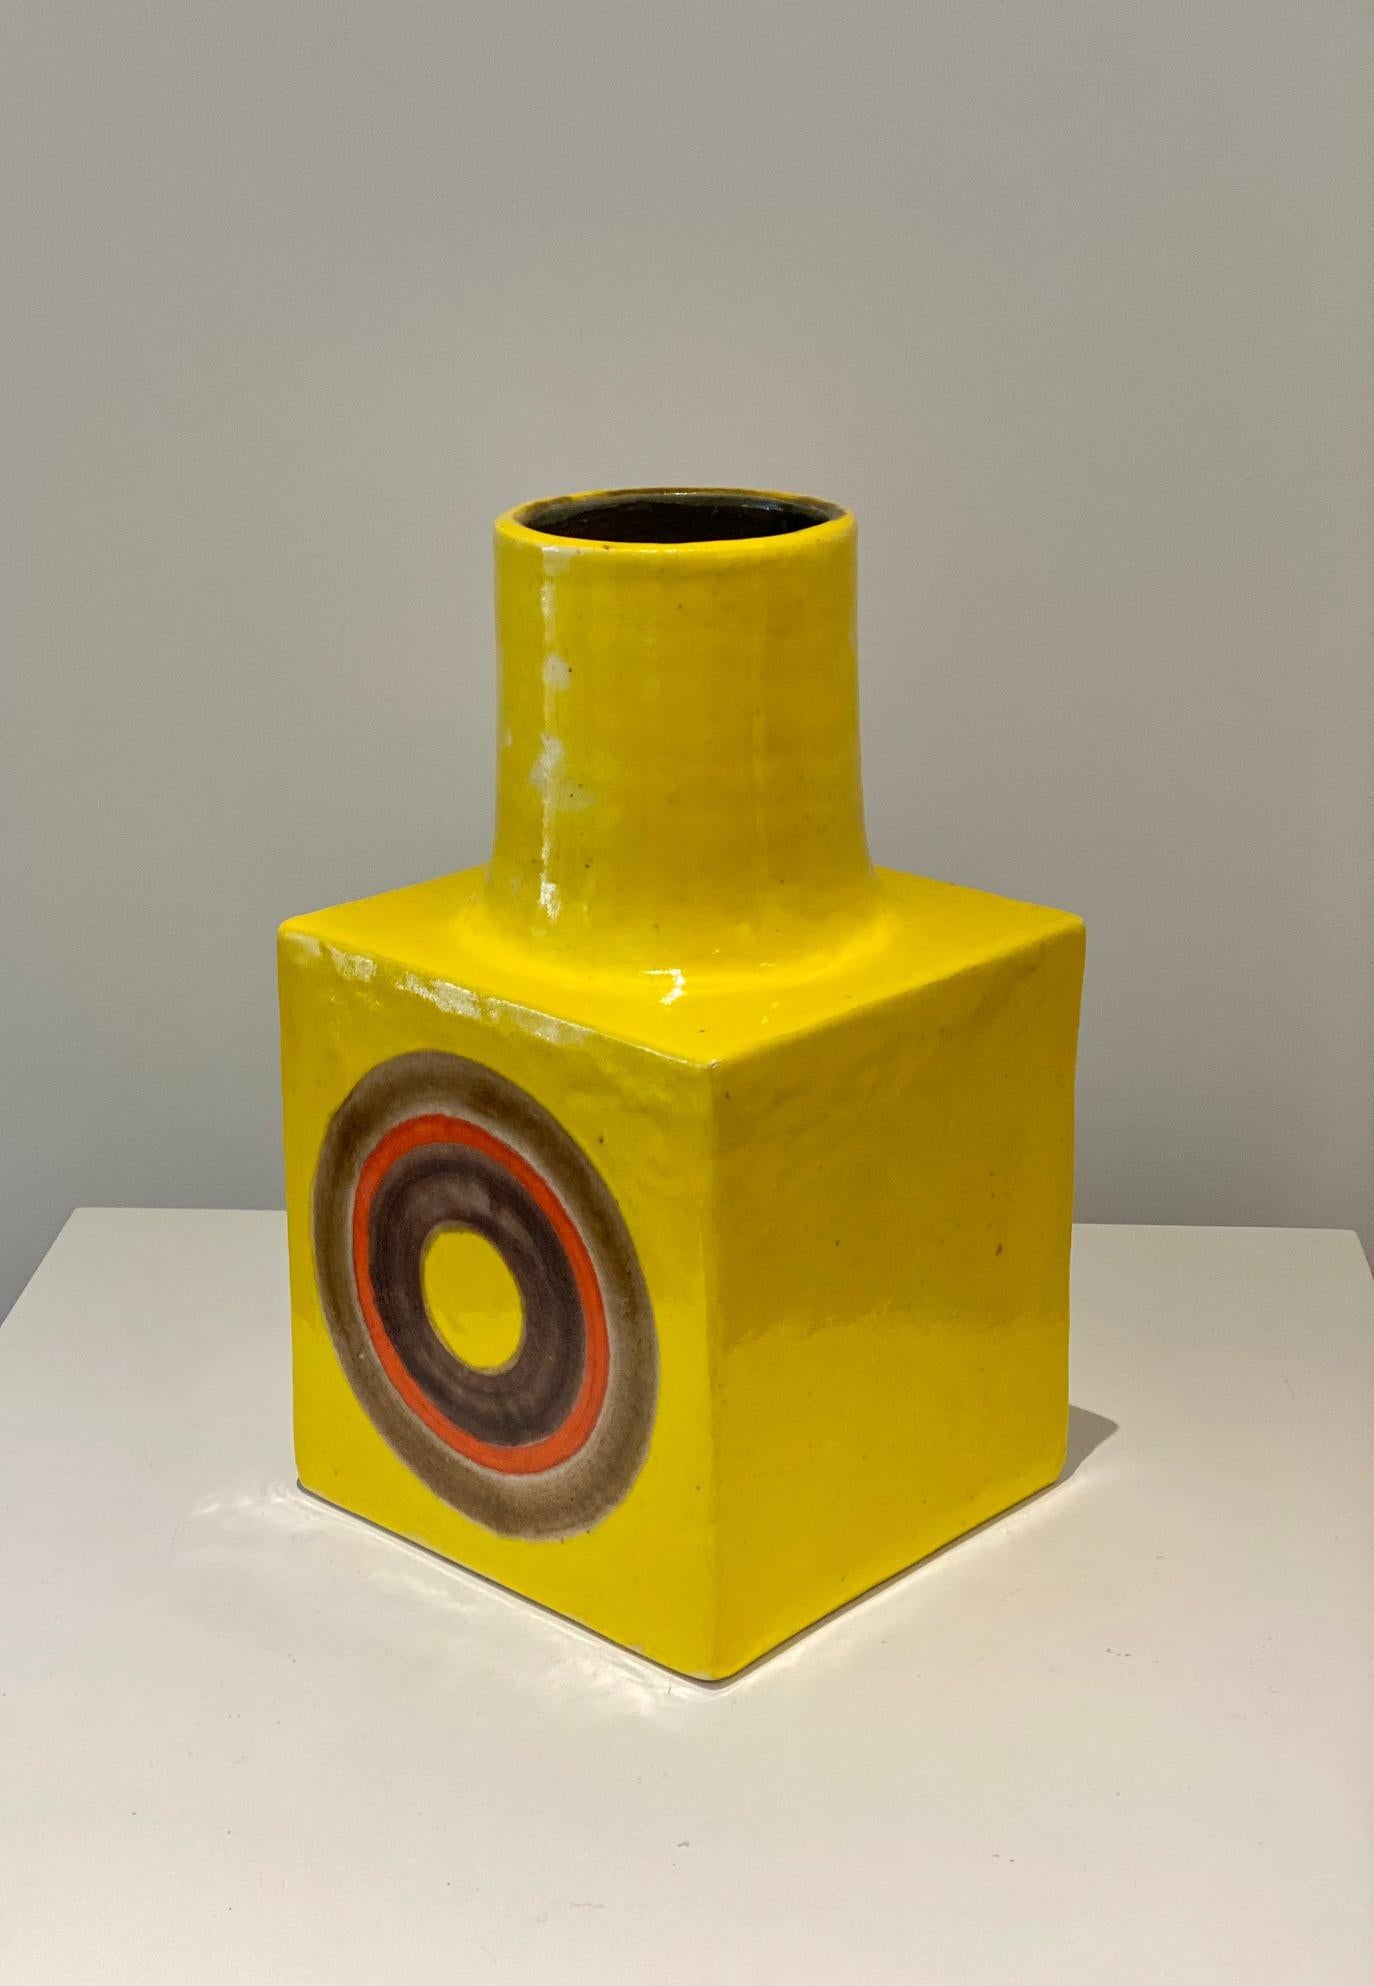 Vase émaillé jaune brillant avec des cercles orange et bruns sur les deux côtés, par Bruno Gambone.
Circa 1960s/1970s
Mesures : H 25 cm x L 15 cm
Signature de l'artiste Gambone Italy à la base.

